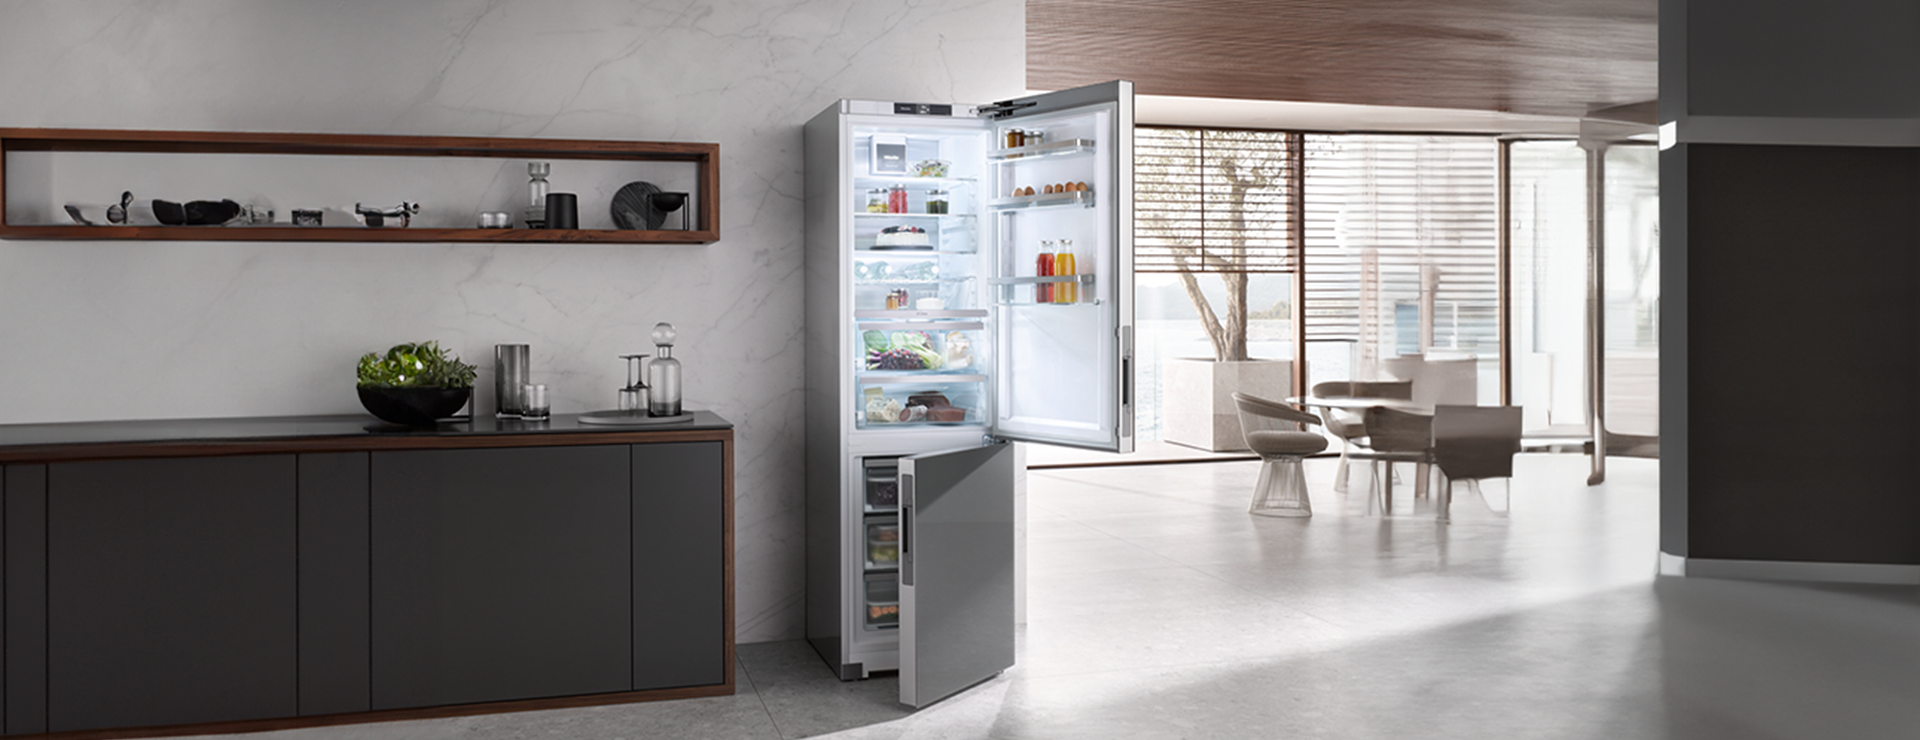 Новая серия холодильного оборудования Miele K4000